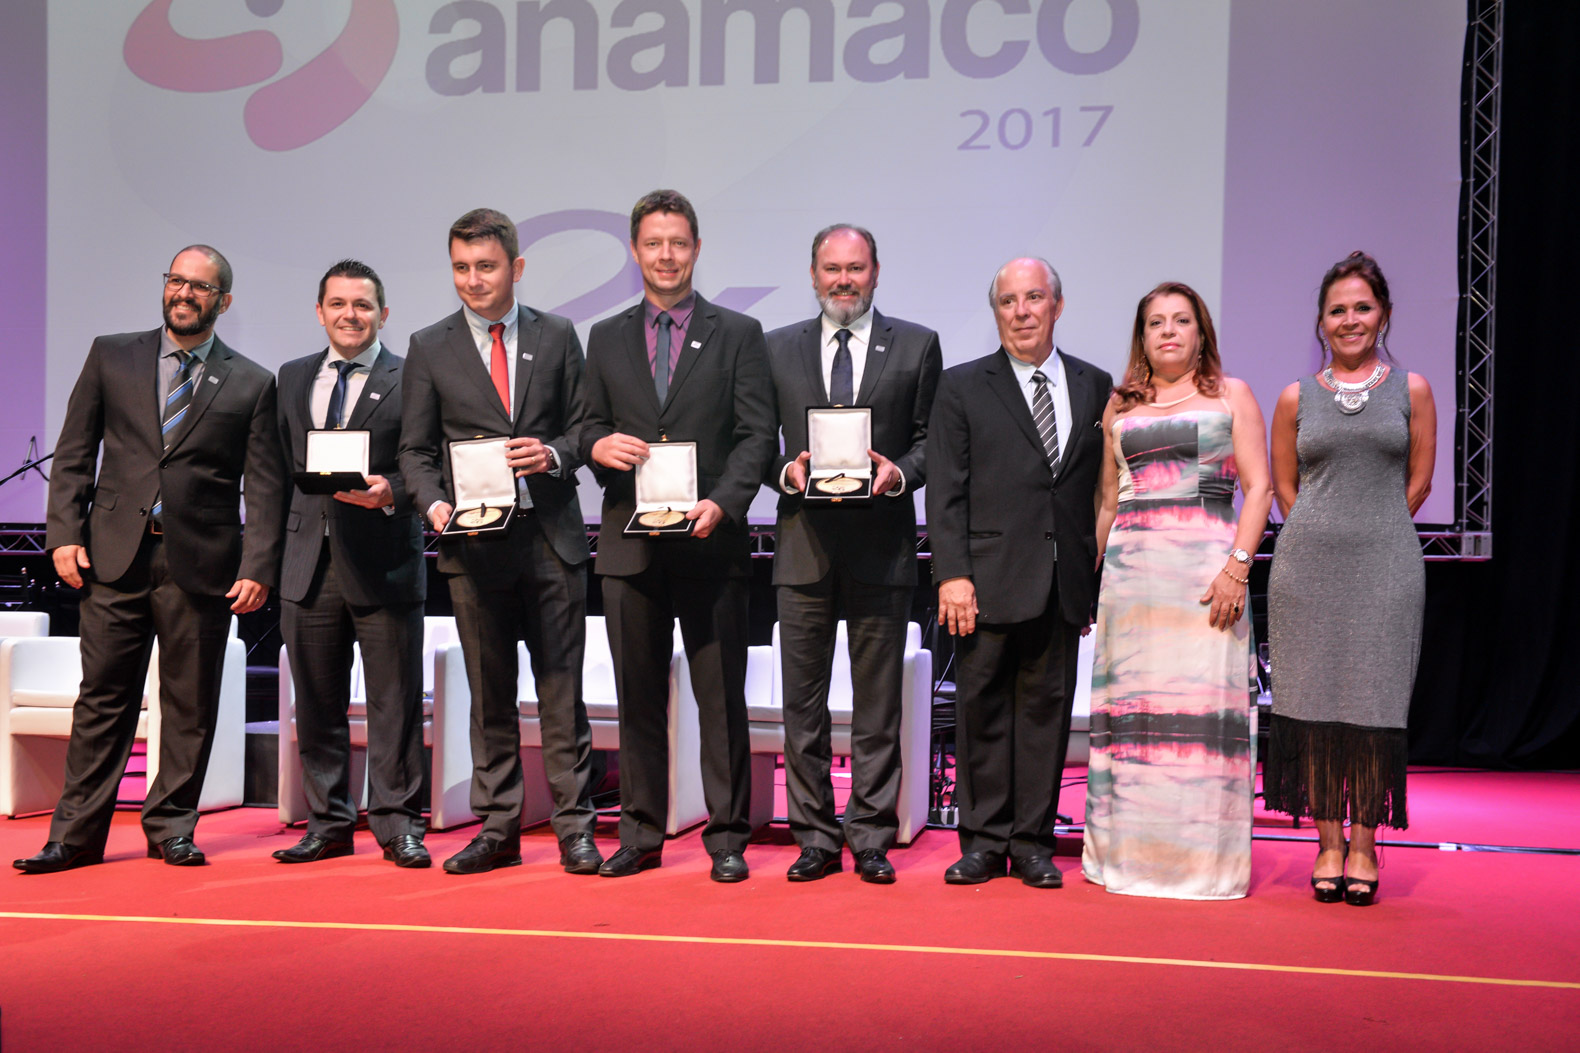 Krona recebe Prêmio Anamaco 2017!